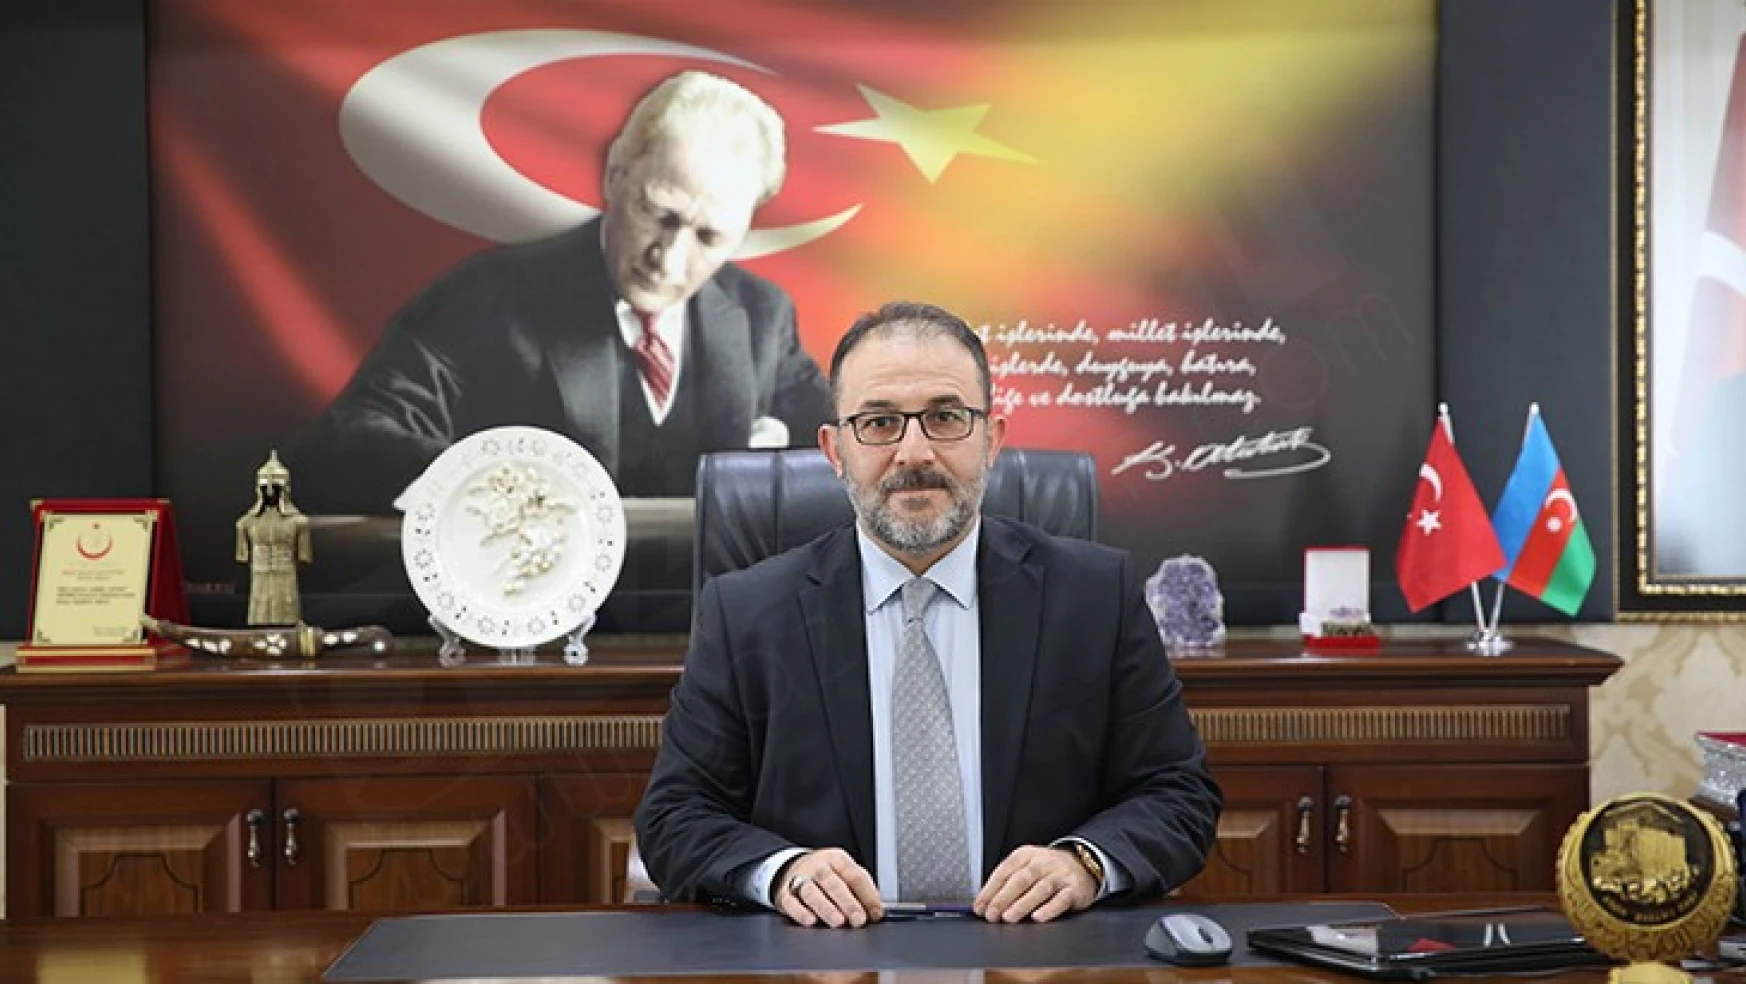 Afşin Belediye Başkanı Güven: Bayramlar, barışın ve kardeşliğin sembolüdür